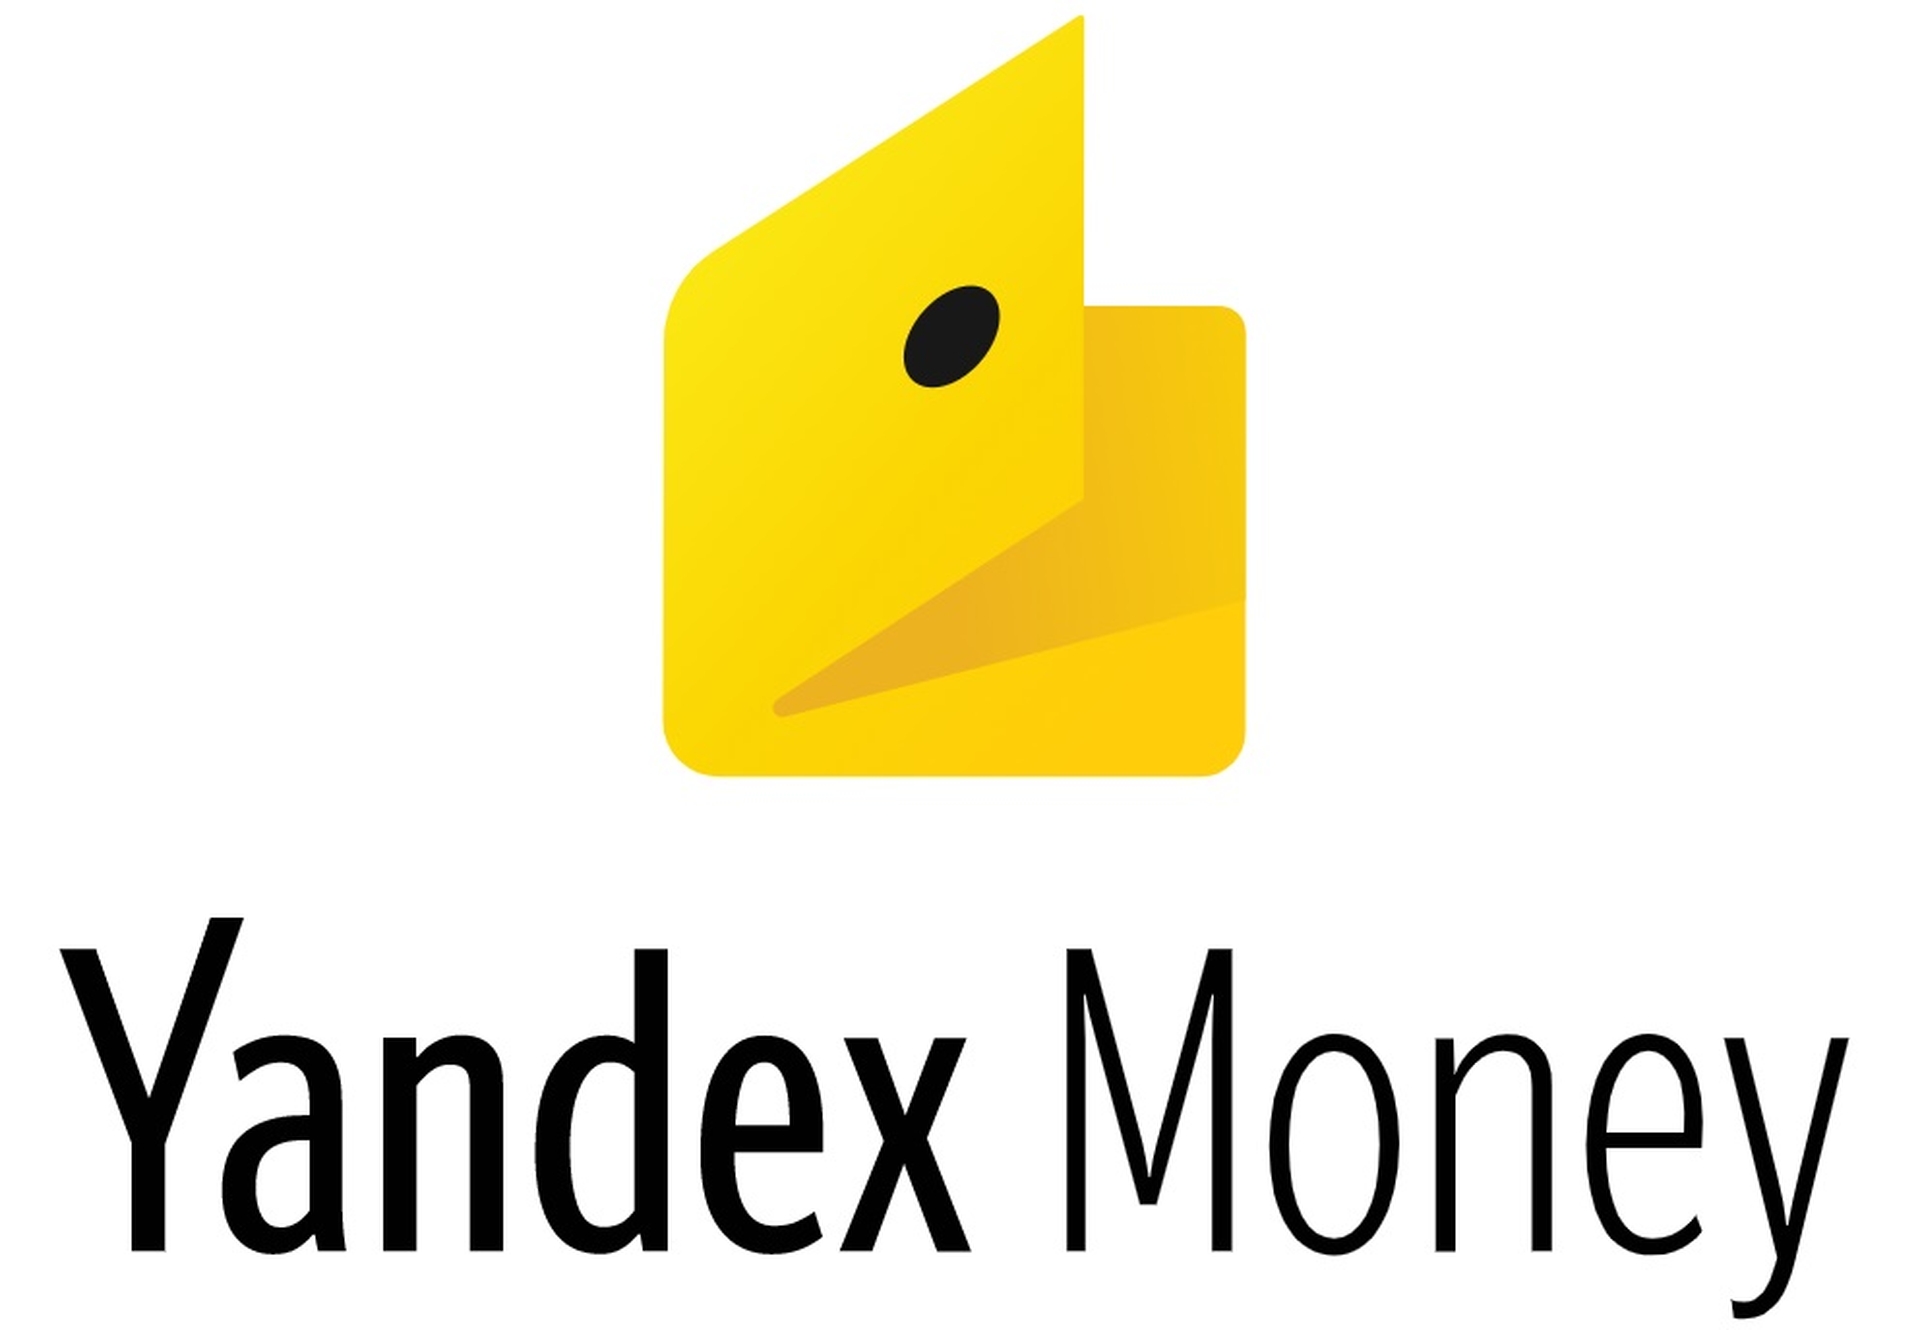 W tym artykule omówimy, jak kupić Bitcoin za pomocą Yandex Money, abyś mógł skorzystać z tej usługi podczas dokonywania kolejnego zakupu Bitcoin.